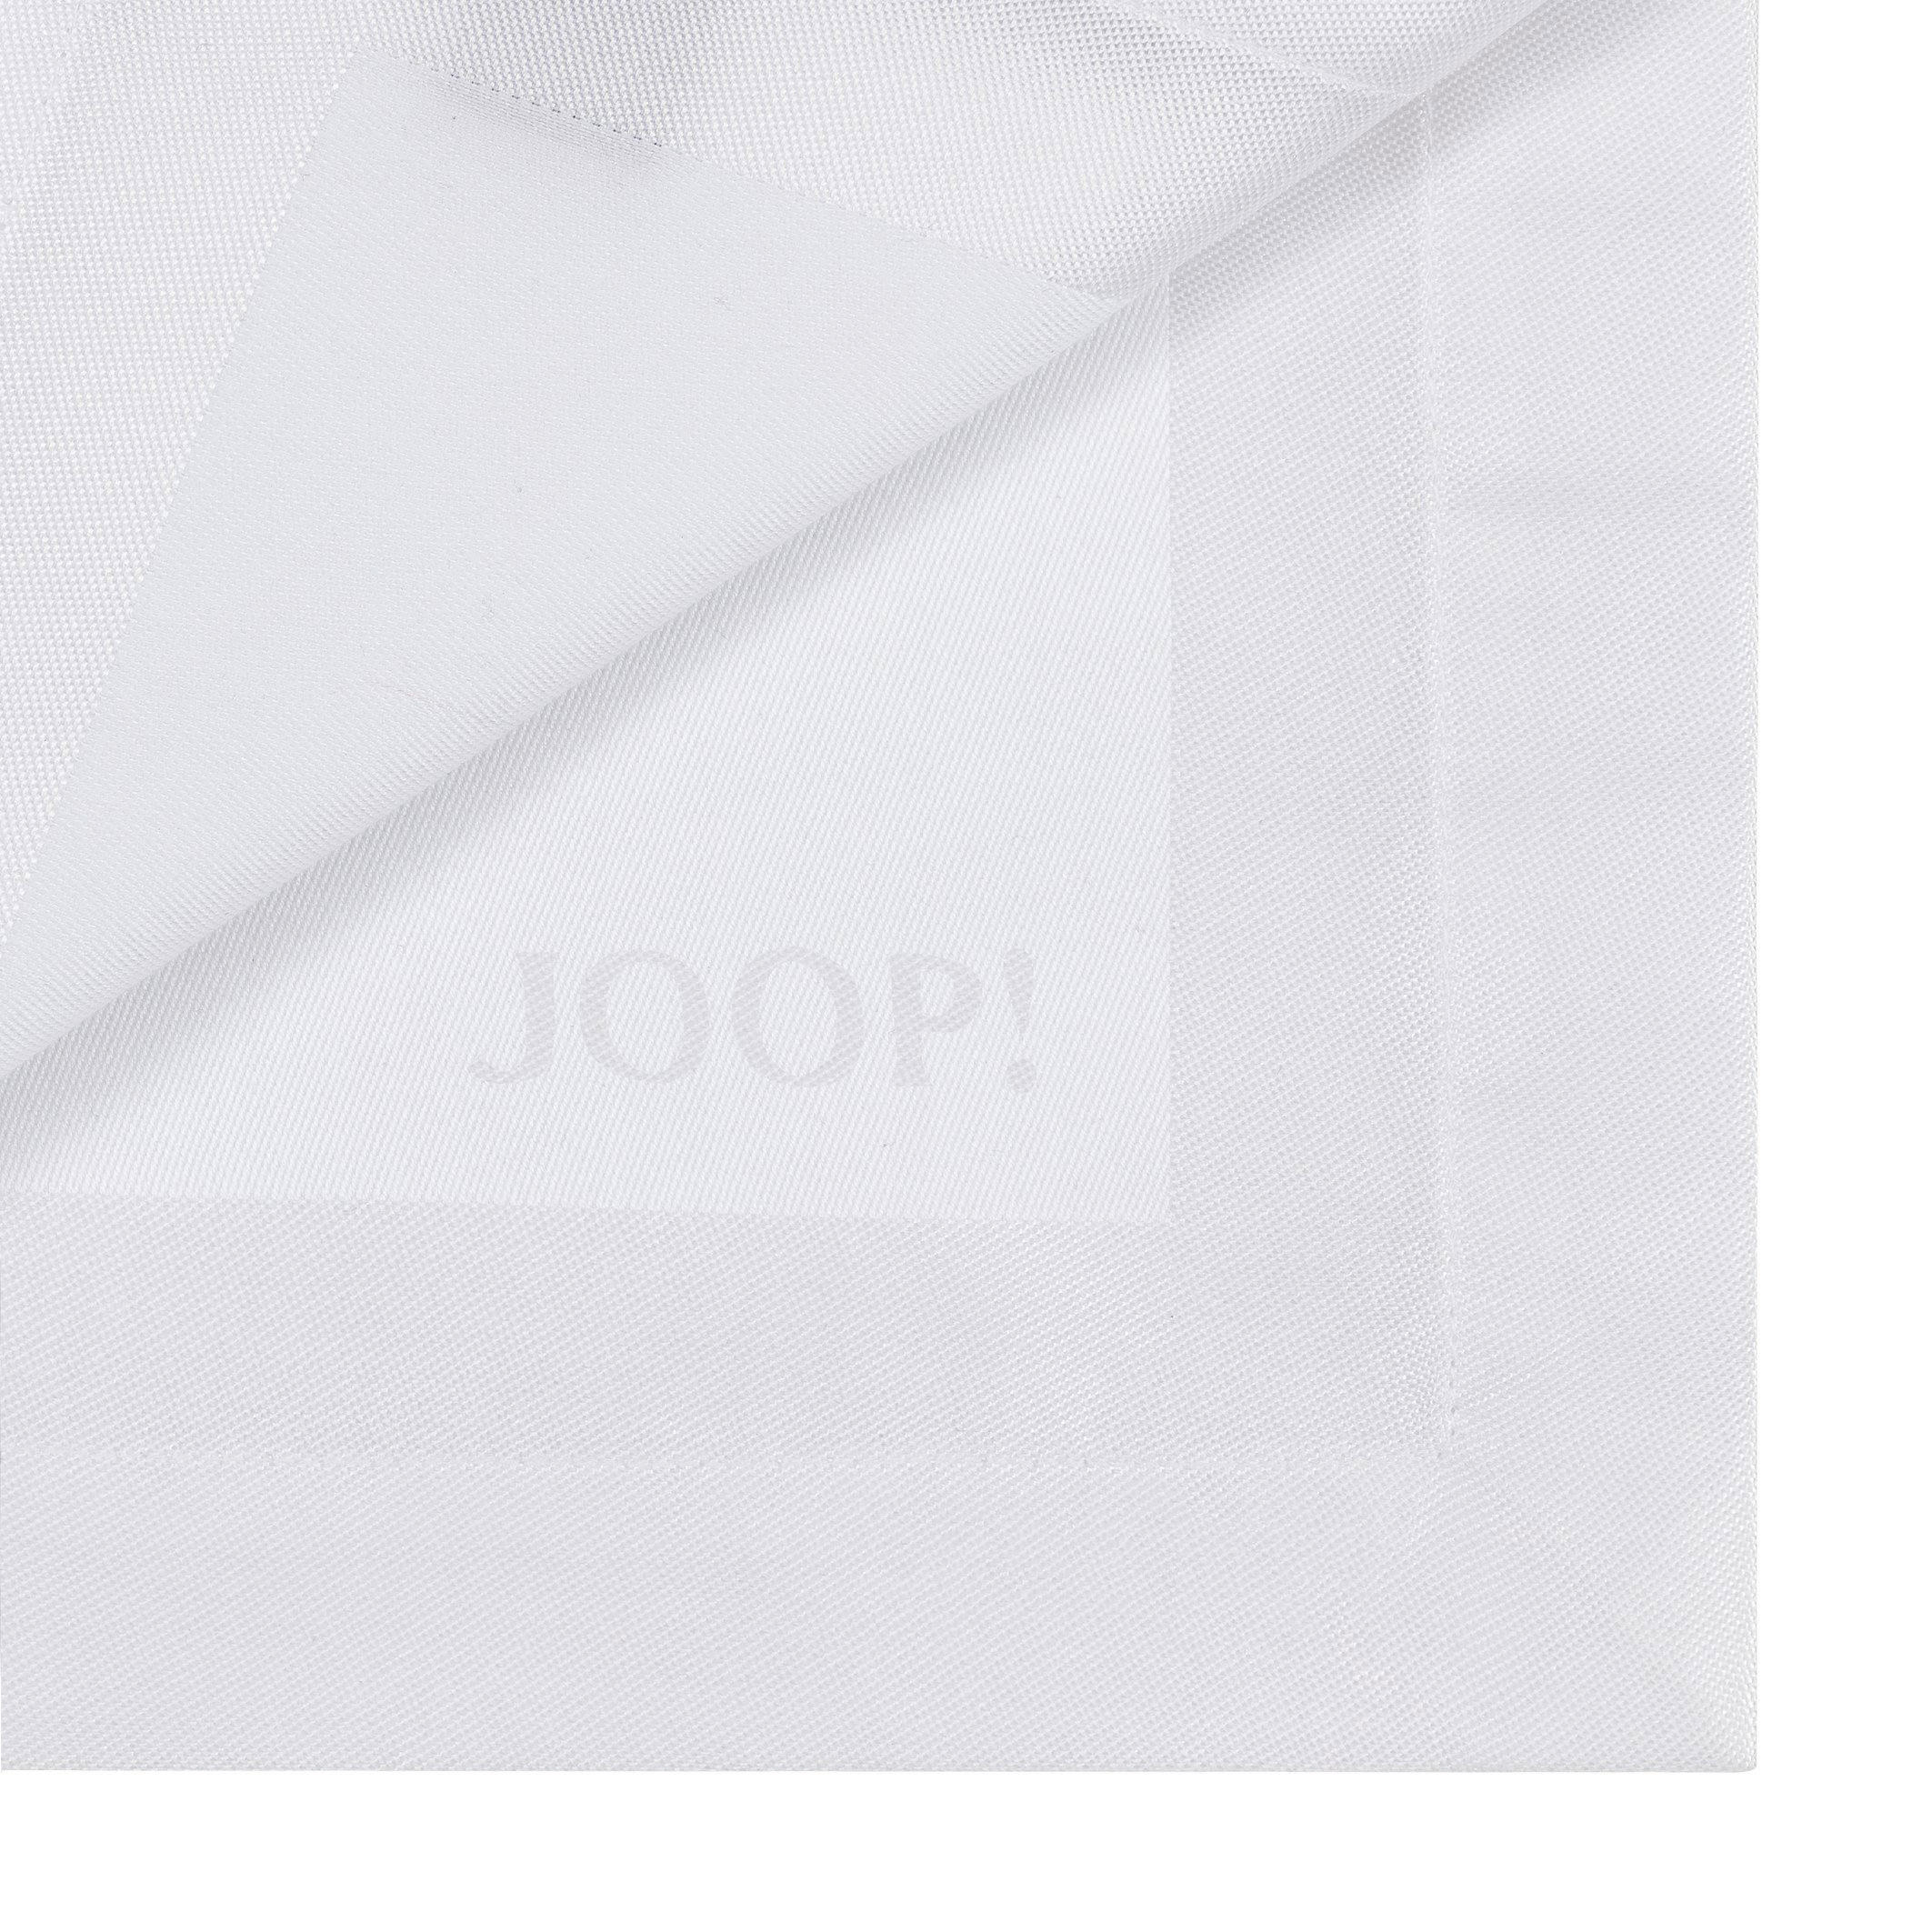 TISCHLÄUFER Signature 50/160 cm  - Weiß, Design, Textil (50/160cm) - Joop!